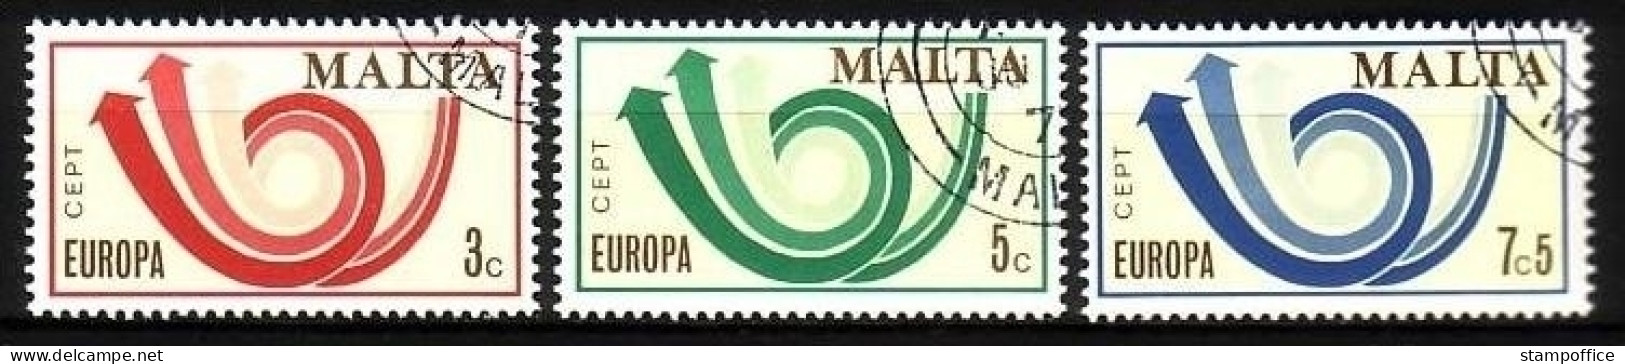 MALTA MI-NR. 472-474 GESTEMPELT(USED) EUROPA 1973 POSTHORN - 1973